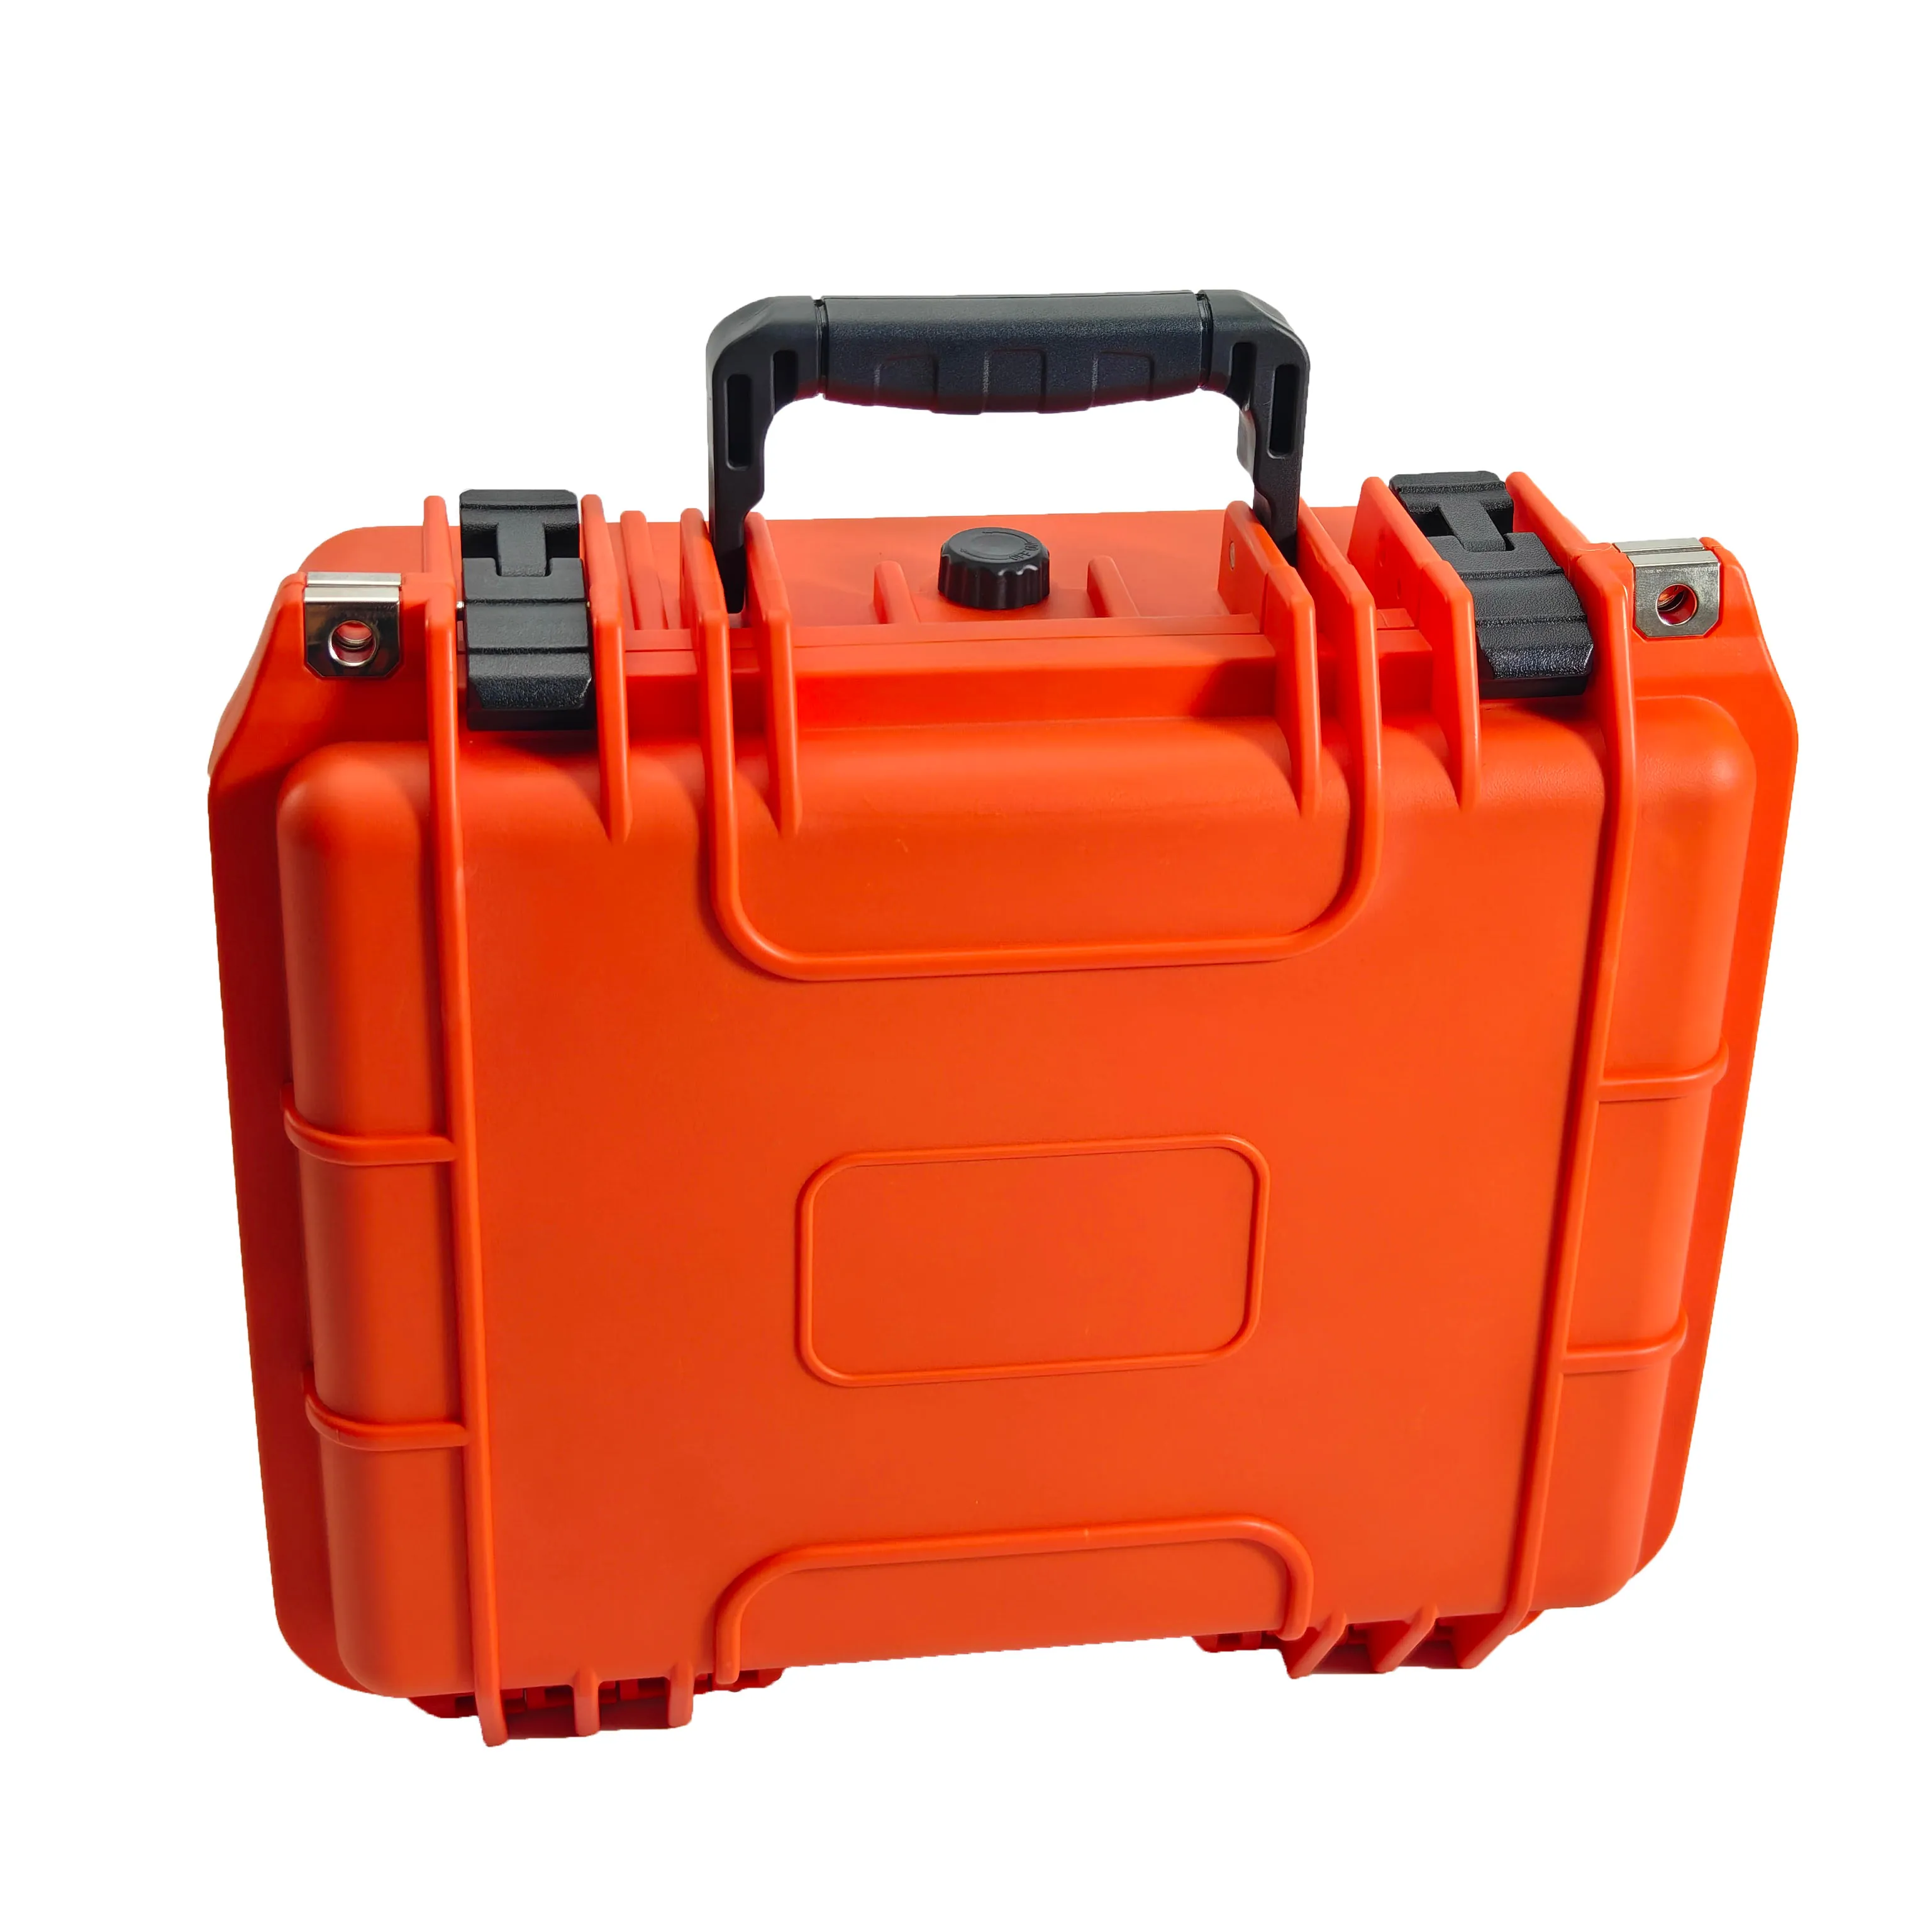 오렌지 컬러 IP67 방수 방진 충격 방지 도구 상자 휴대용 하드 플라스틱 케이스